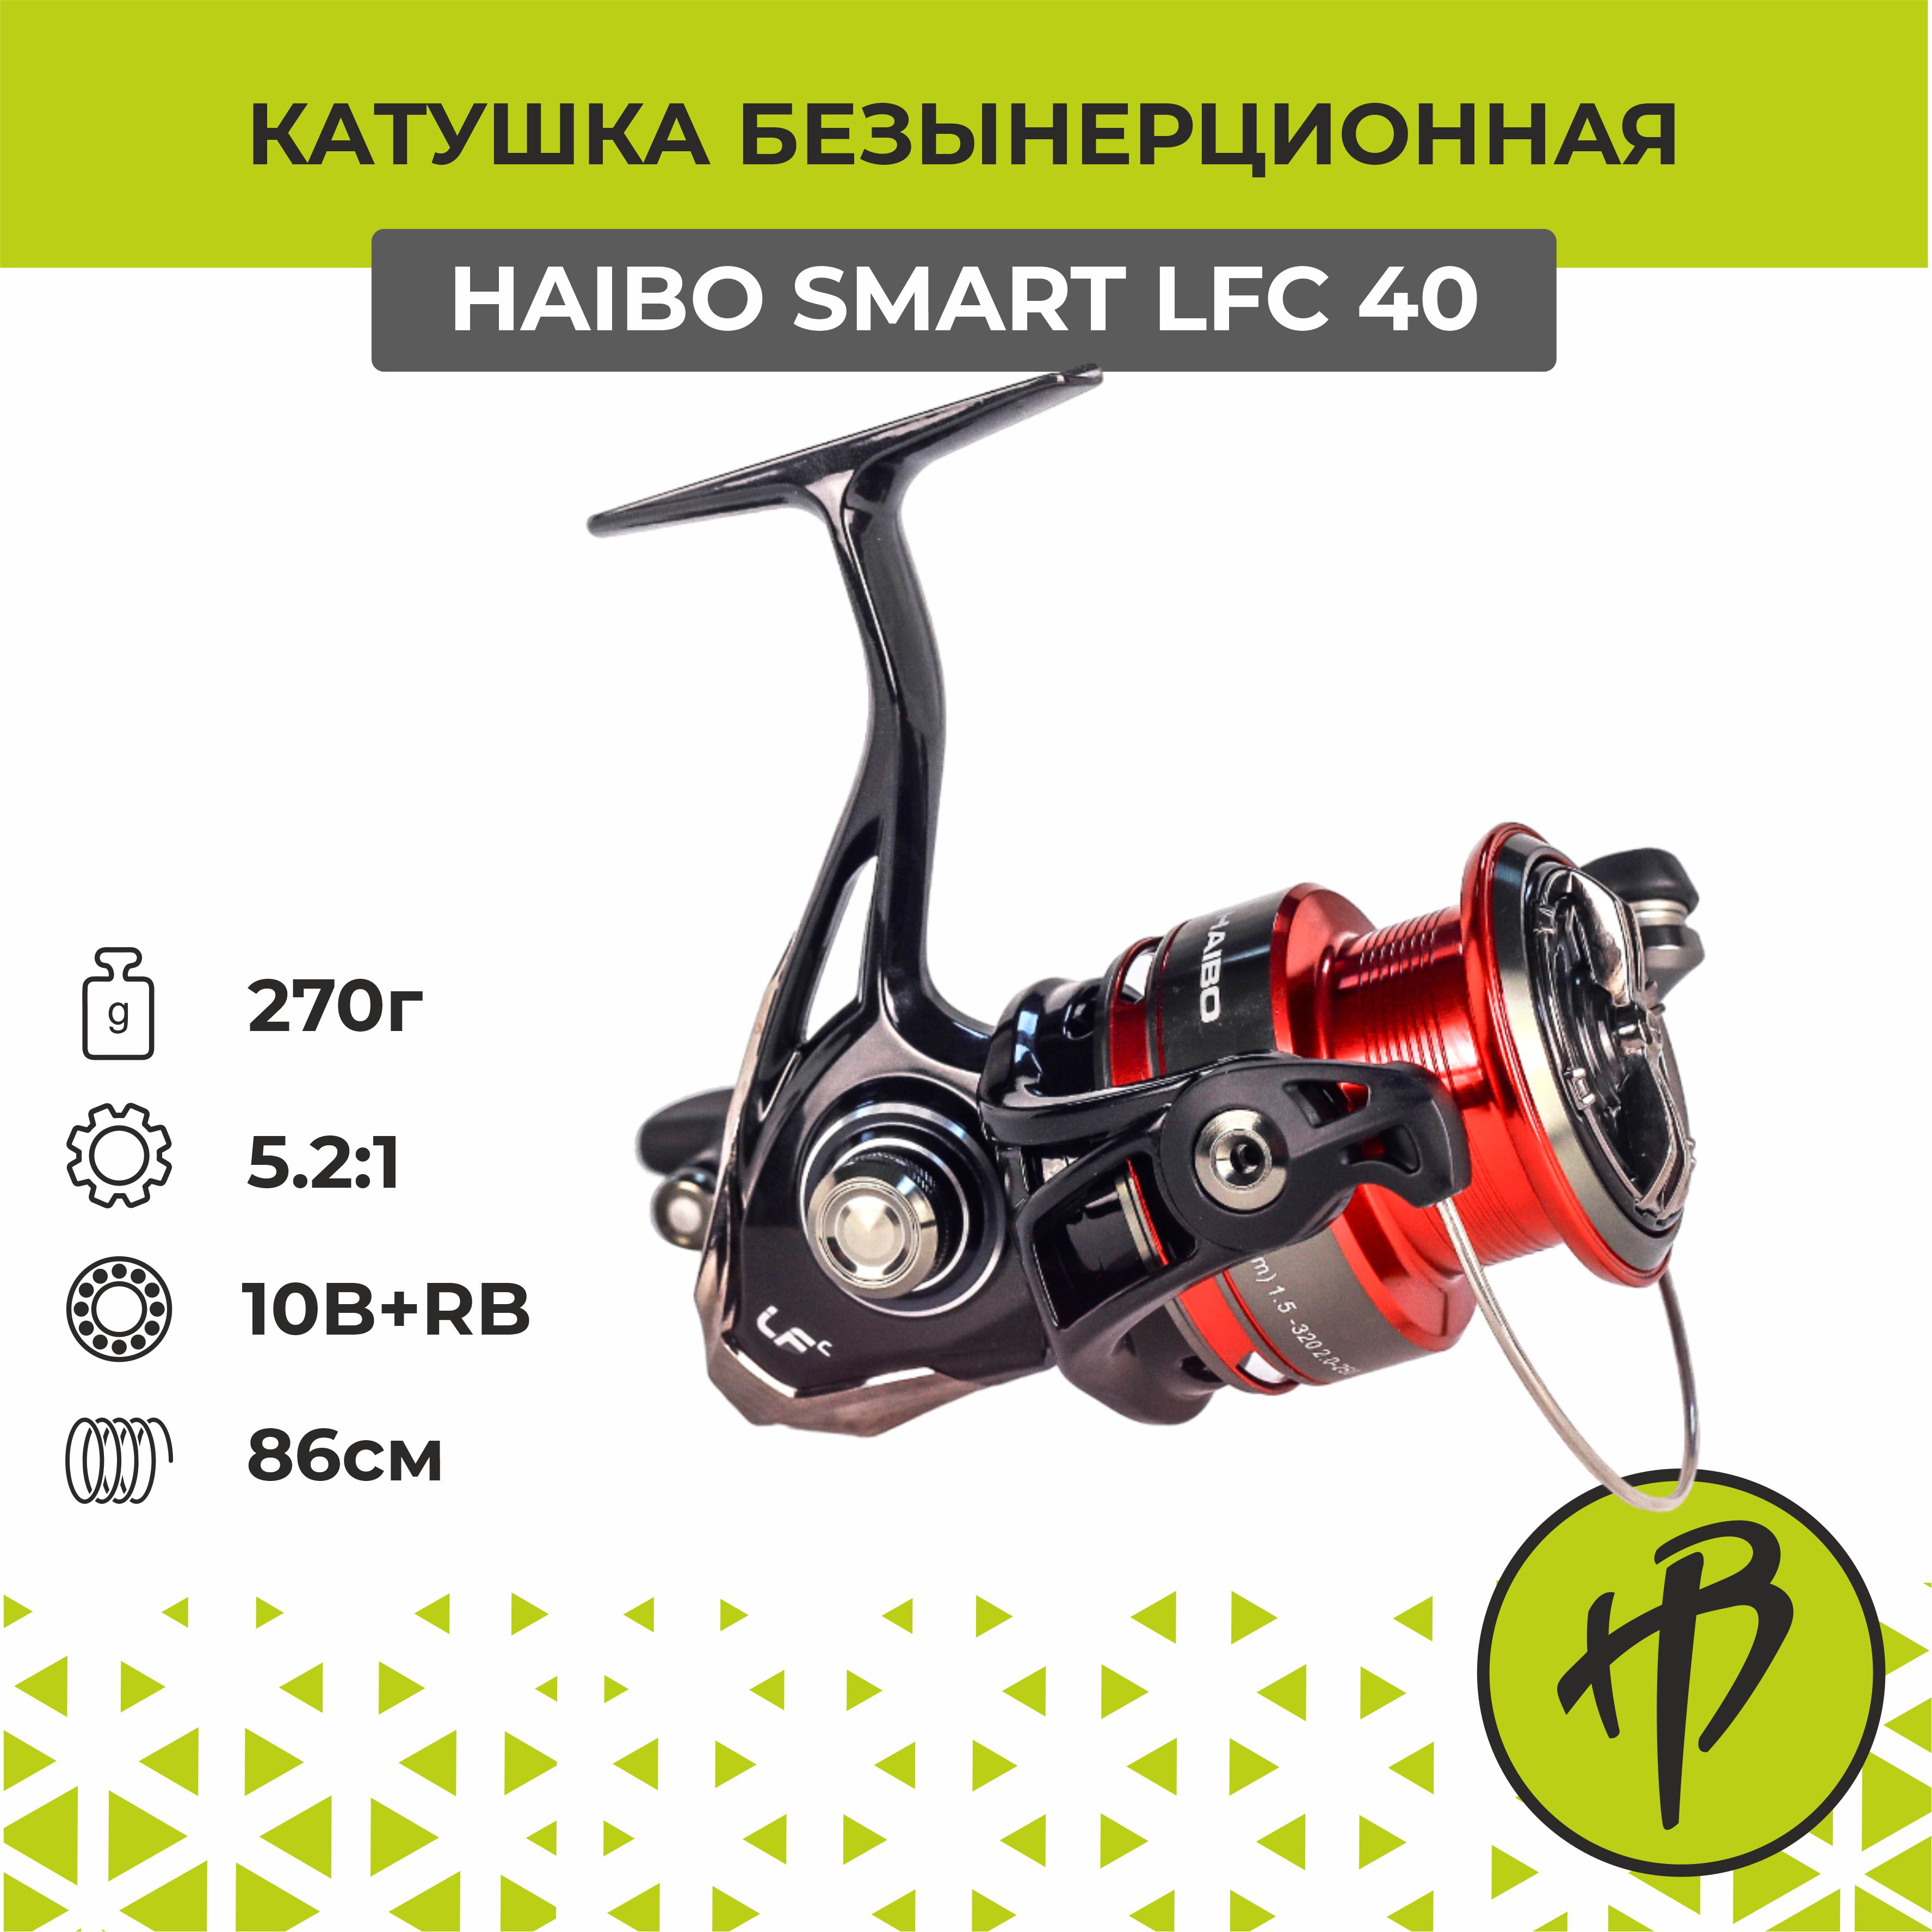 Катушка для спиннинга безынерционная Haibo Smart LFC 40, правая/левая рука